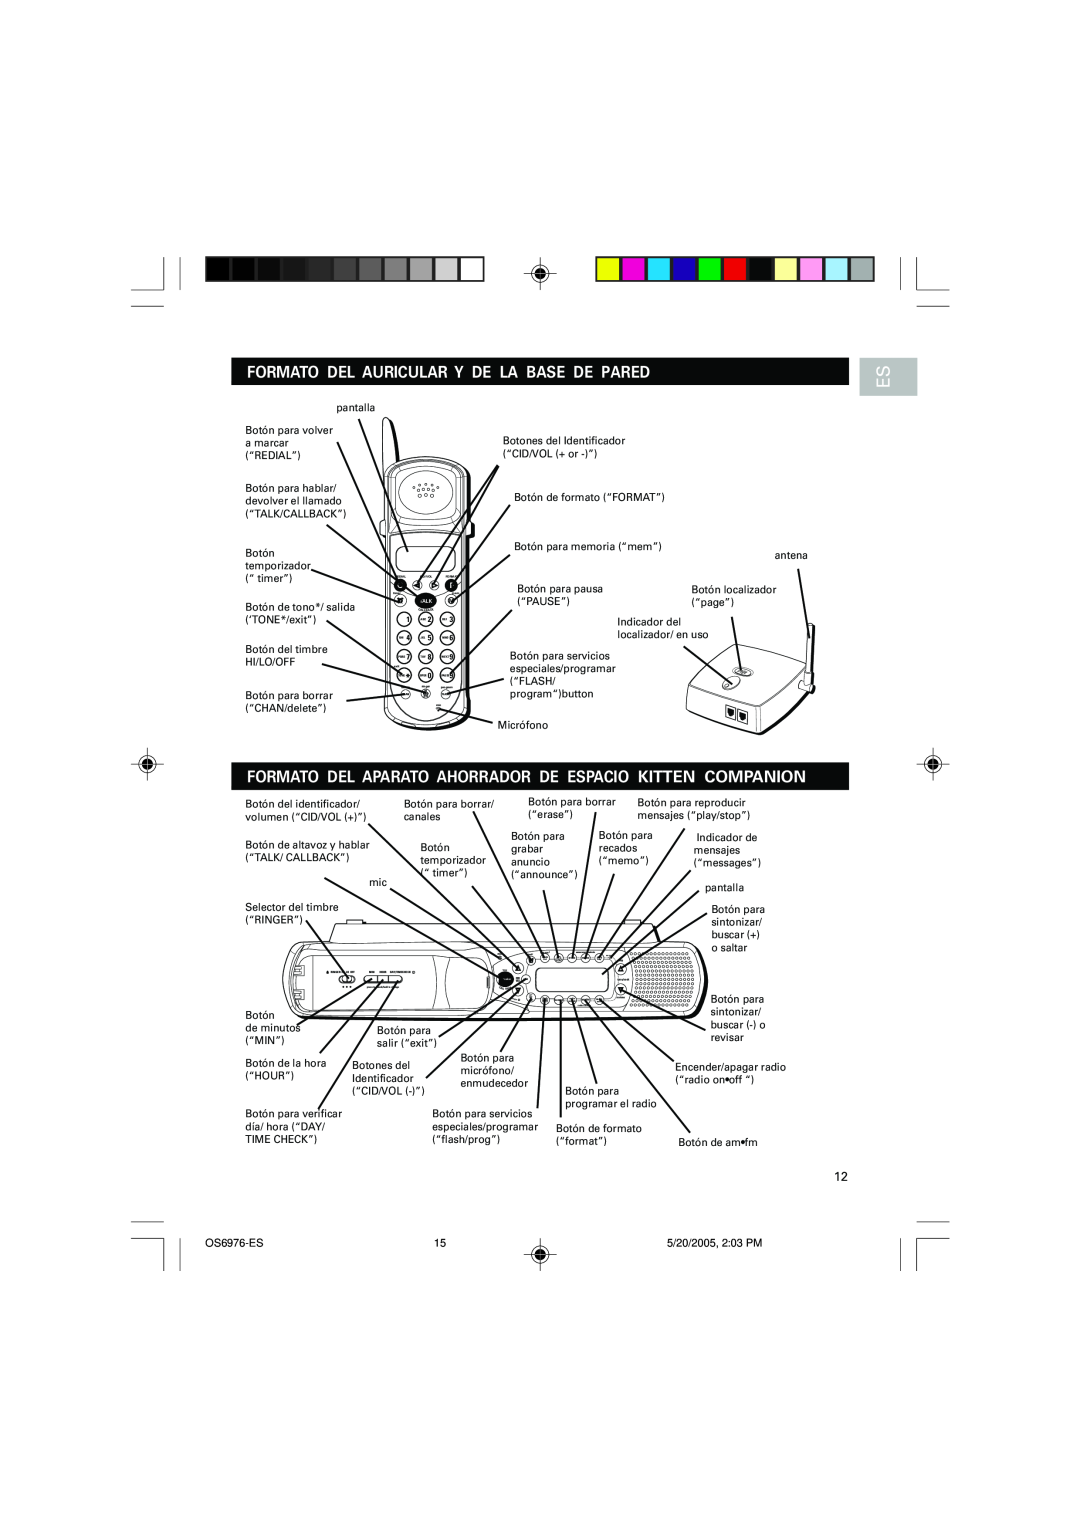 Oregon Scientific OS6976 user manual Formato Del Auricular Y De La Base De Pared, Talk 